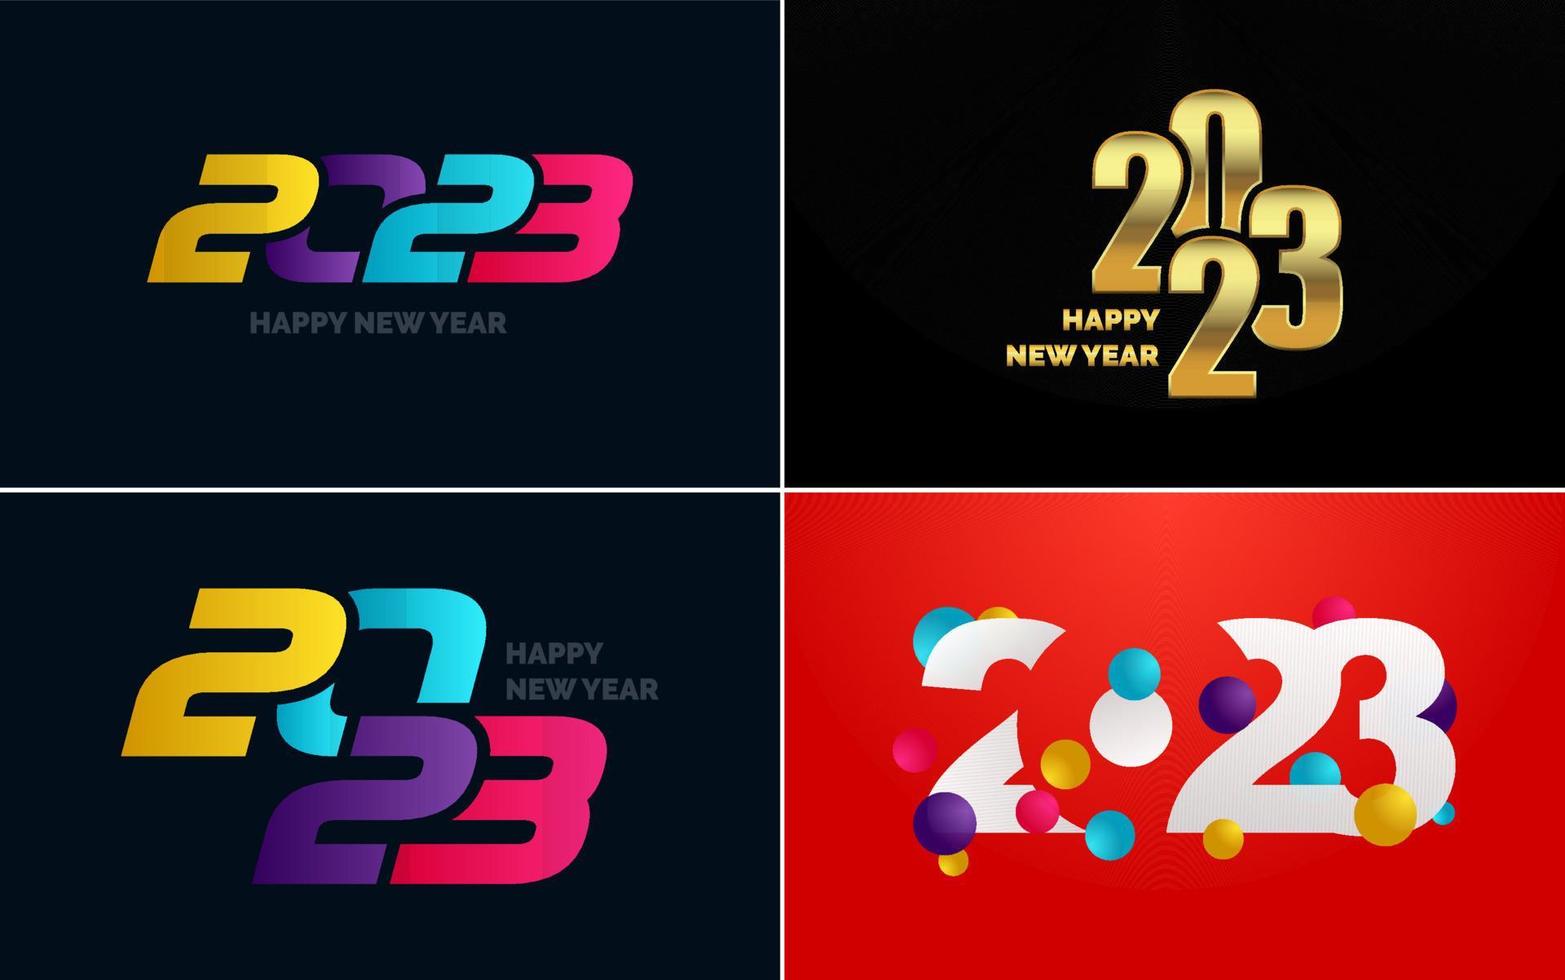 großes Set 2023 frohes neues Jahr schwarzes Logo-Textdesign. 20 23 Zahlenentwurfsvorlage. sammlung von symbolen von 2023 guten rutsch ins neue jahr vektor